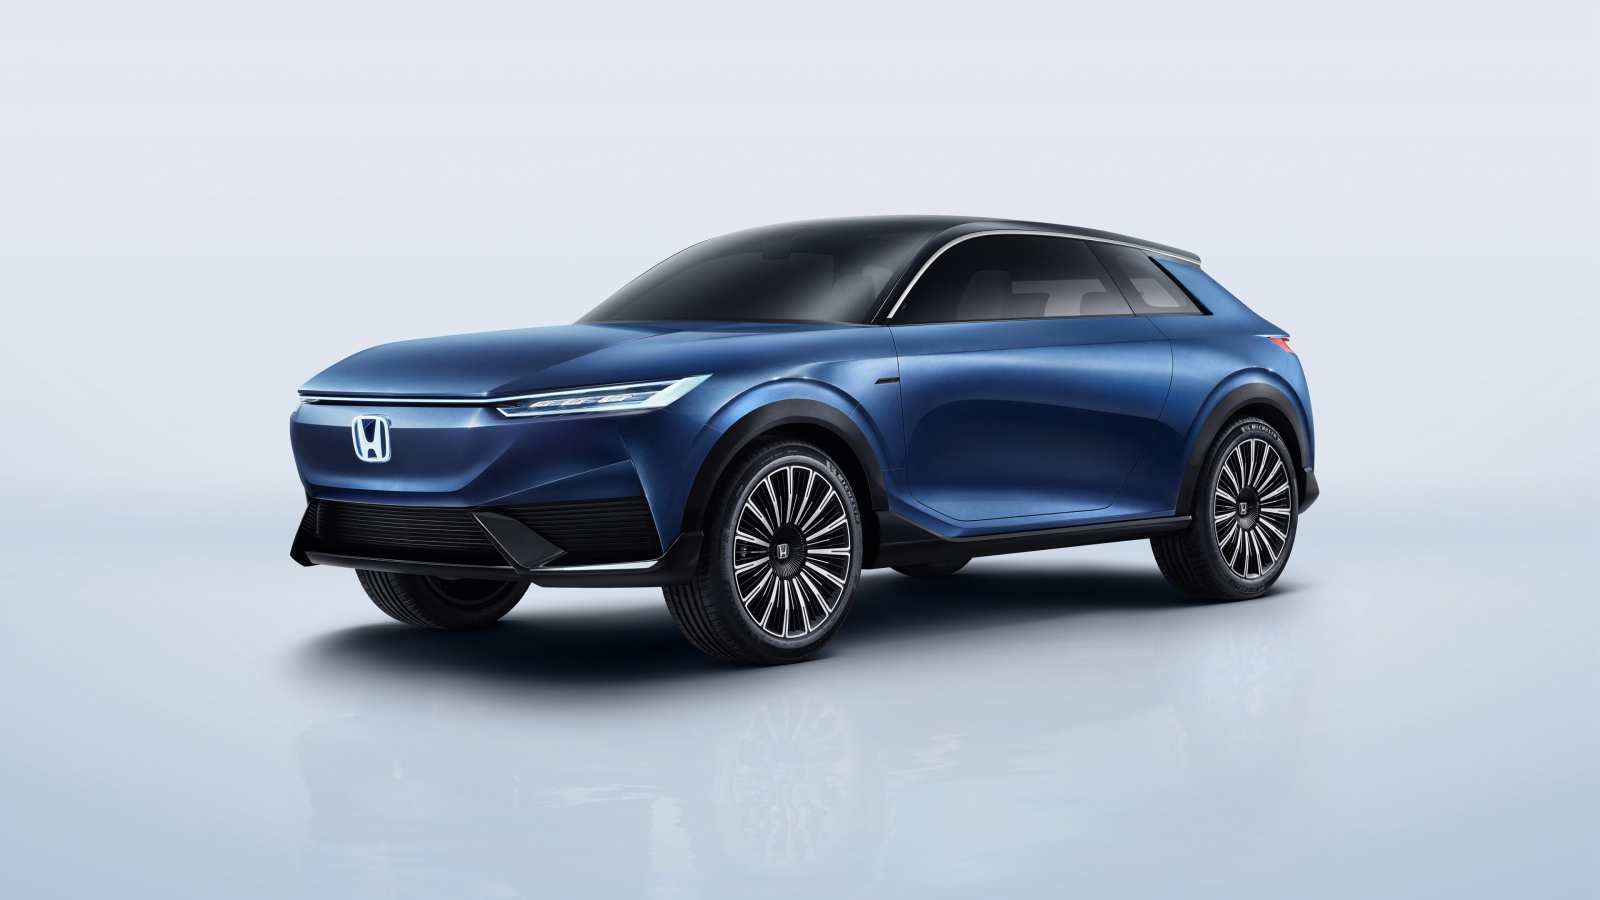 Синий автомобиль Honda SUV Econcept 2020 года на сером фоне